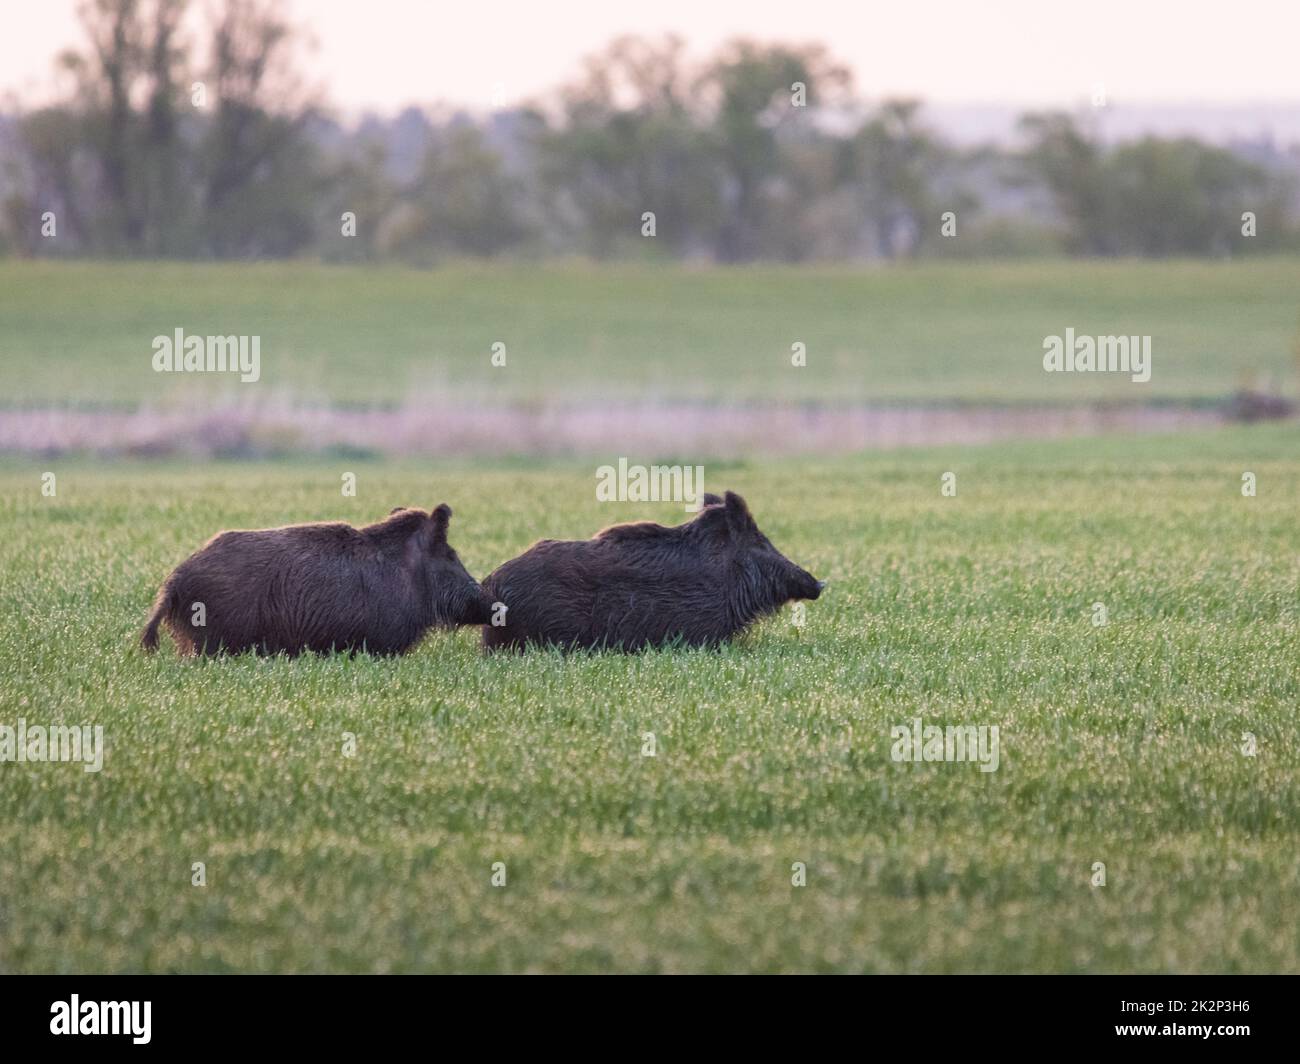 Wildschweine fressen im Sommer Grüngetreide. Wildschweine, die sich im landwirtschaftlichen Kopierraum verstecken. Wirbeltierweiden im Sommer mit verschwommenem Hintergrund. Stockfoto